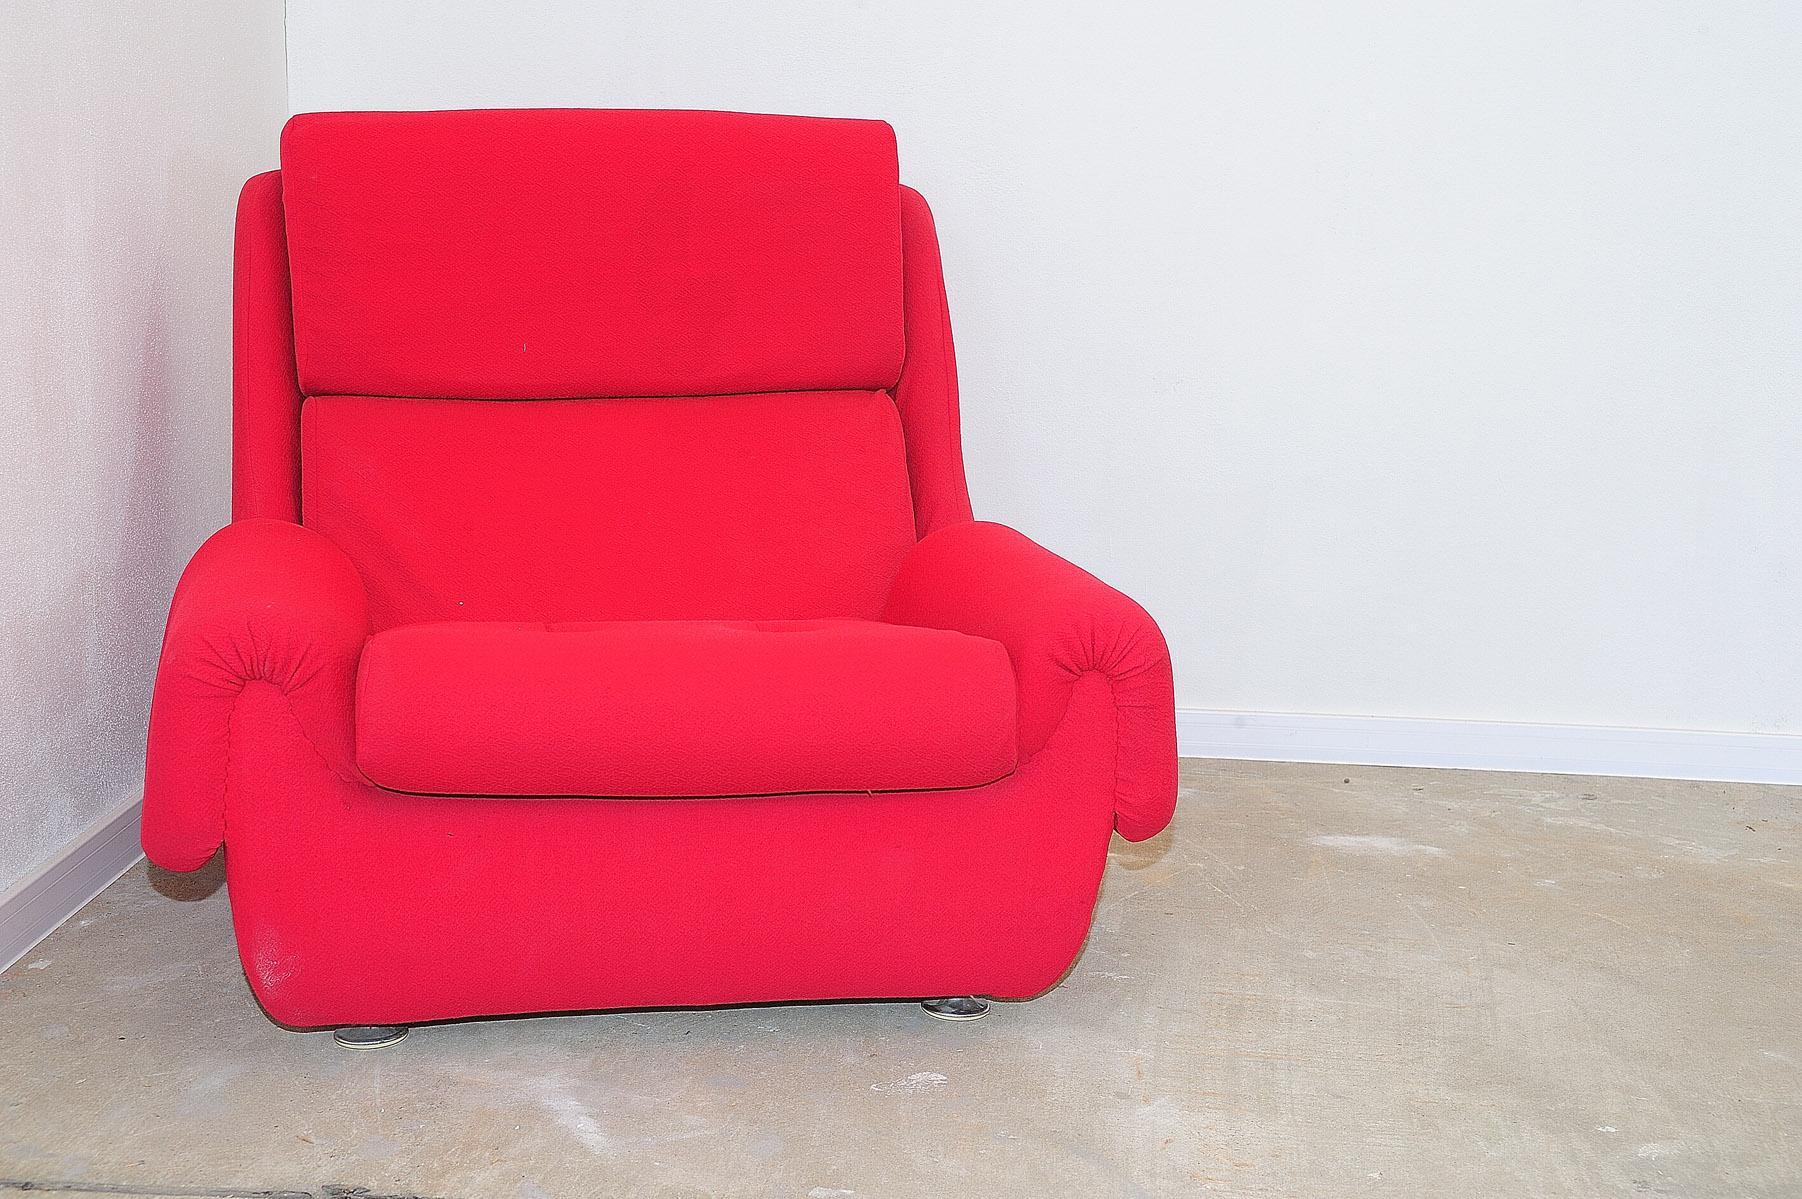 Ces fauteuils faisaient partie d'un ensemble de salon fabriqué par la société Jitona dans les années 1970.
Ils représentent un exemple typique du design de meubles des années 1970/1980 du XXe siècle dans l'ancienne Tchécoslovaquie.
Le mobilier est